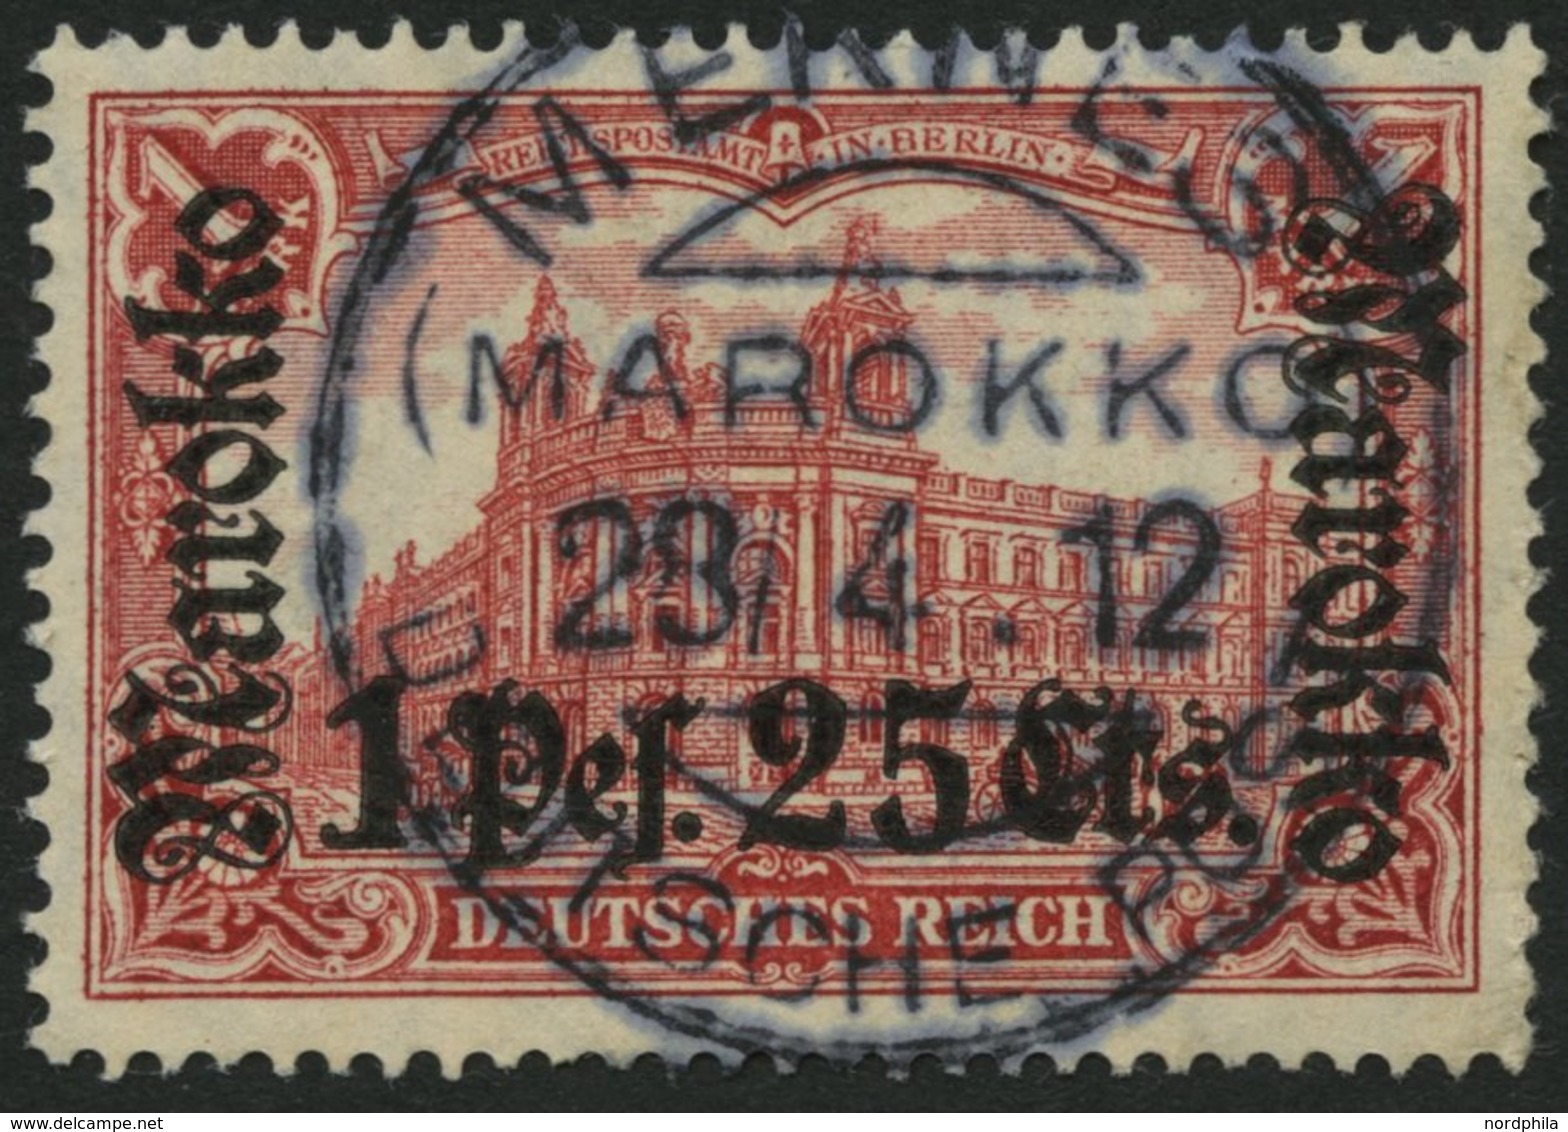 DP IN MAROKKO 55IA O, 1911, 1 P. 25 C. Auf 1 M., Friedensdruck, Zentrischer Stempel MEKNES, Normale Zähnung, Pracht - Marocco (uffici)